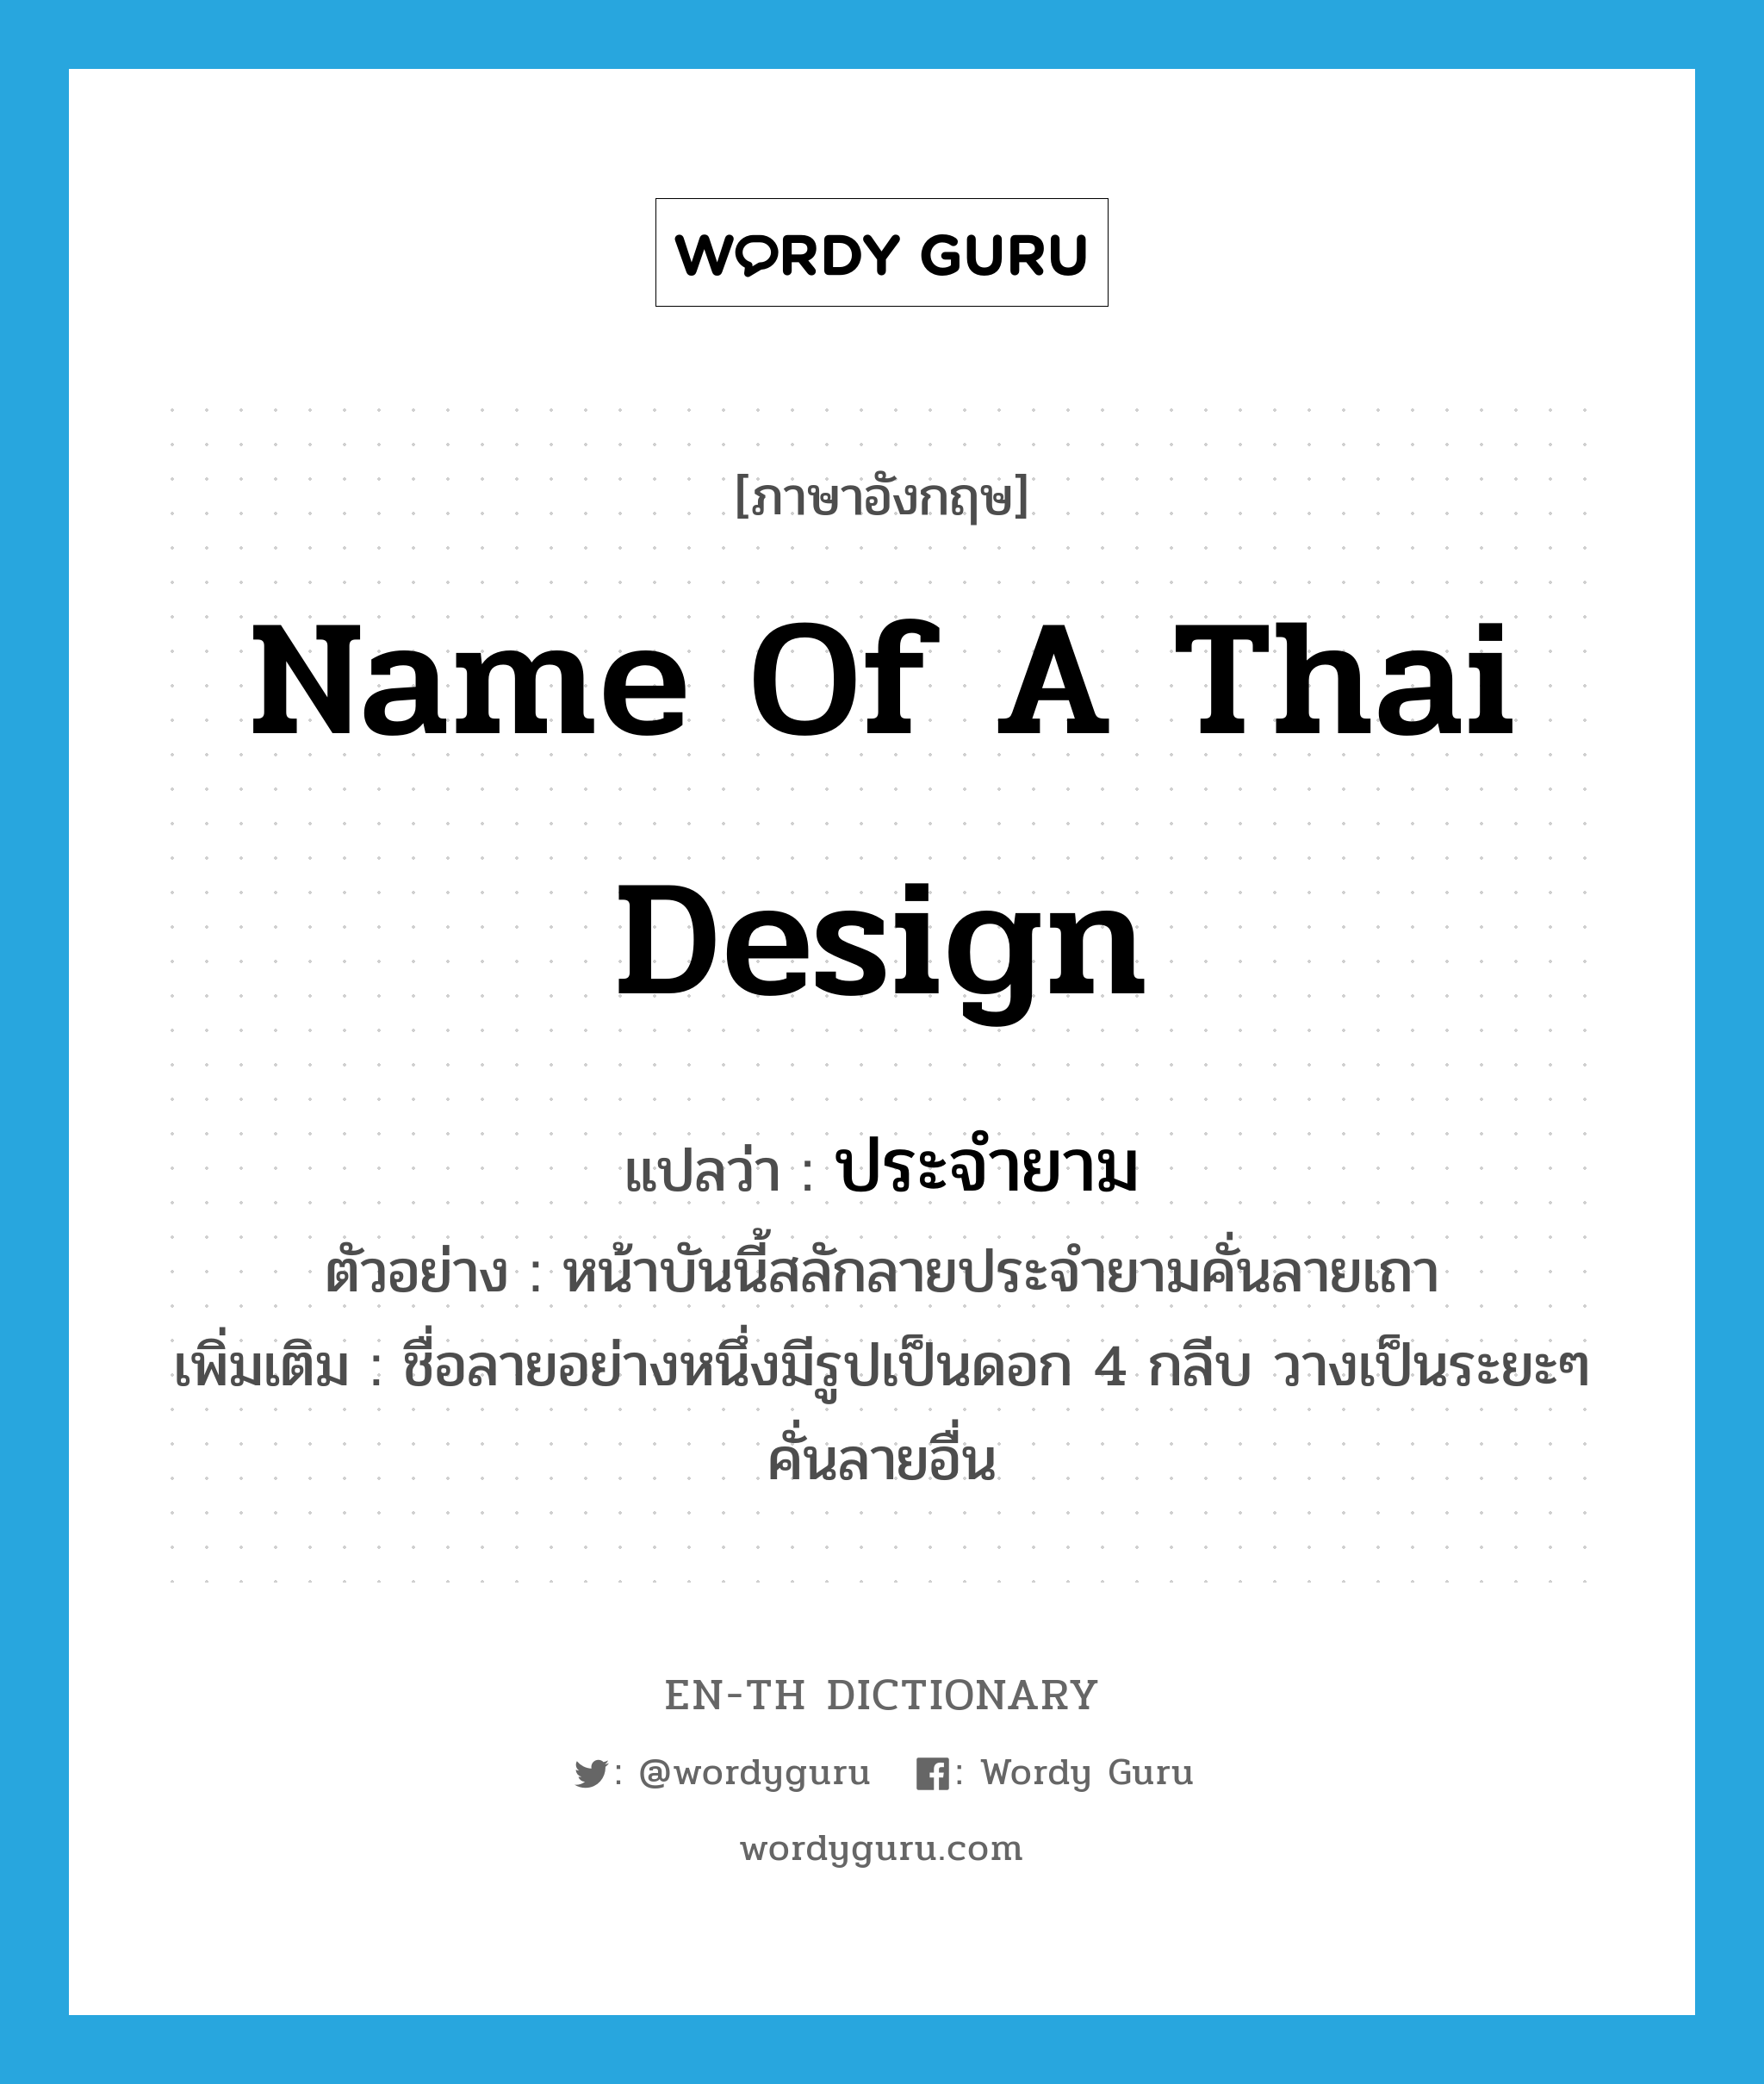 name of a Thai design แปลว่า?, คำศัพท์ภาษาอังกฤษ name of a Thai design แปลว่า ประจำยาม ประเภท N ตัวอย่าง หน้าบันนี้สลักลายประจำยามคั่นลายเถา เพิ่มเติม ชื่อลายอย่างหนึ่งมีรูปเป็นดอก 4 กลีบ วางเป็นระยะๆ คั่นลายอื่น หมวด N